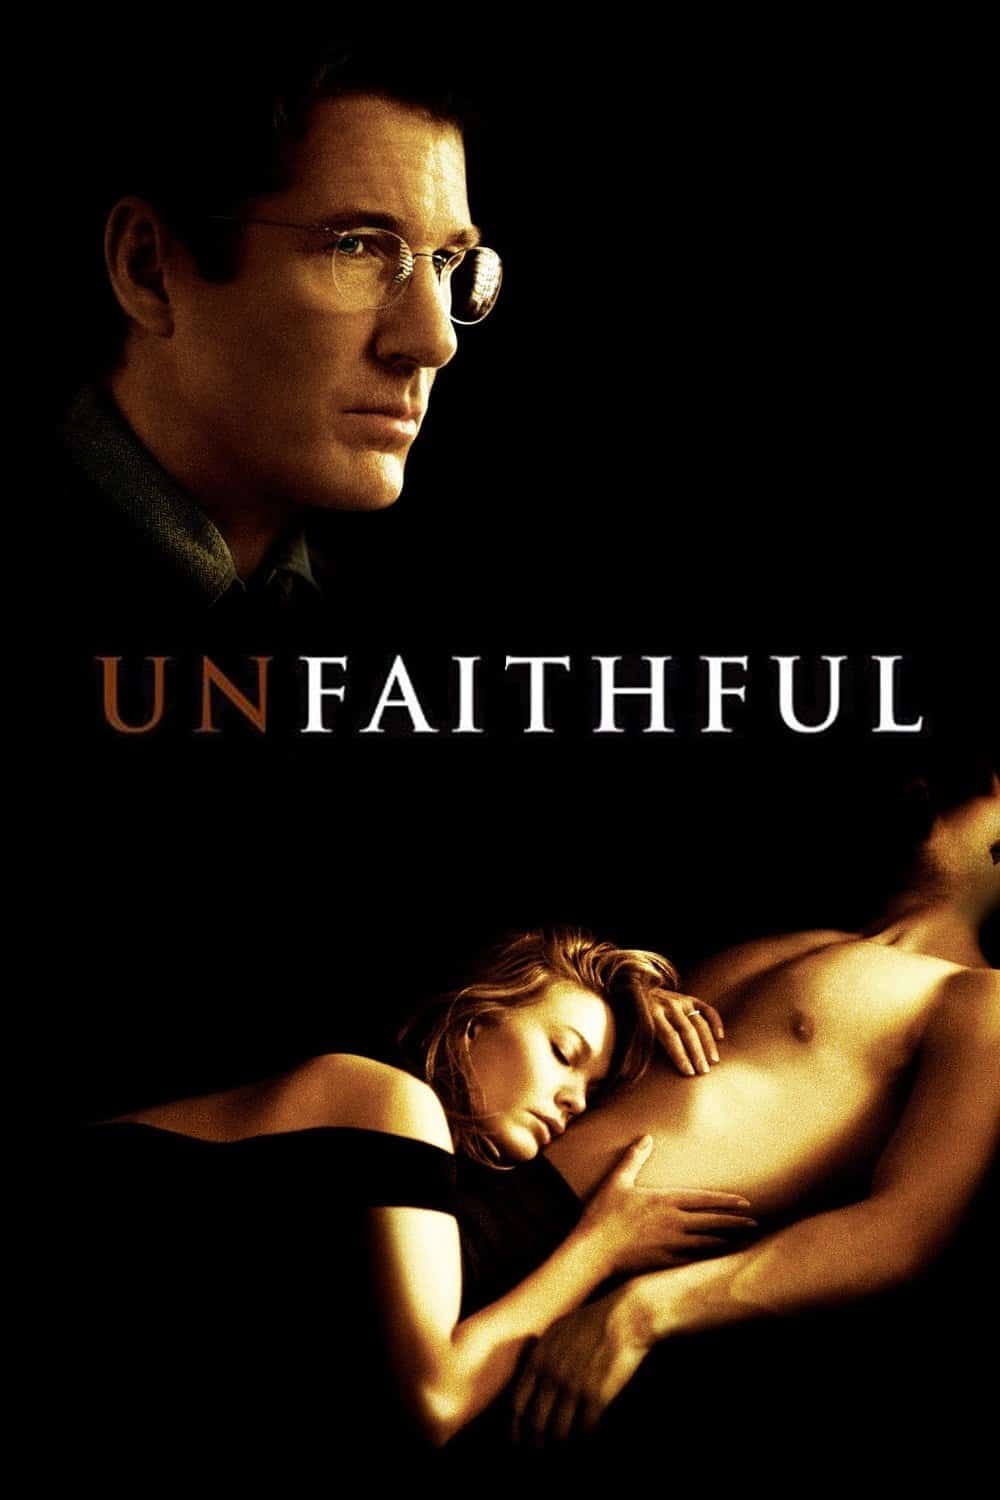 Unfaithful, 2002 